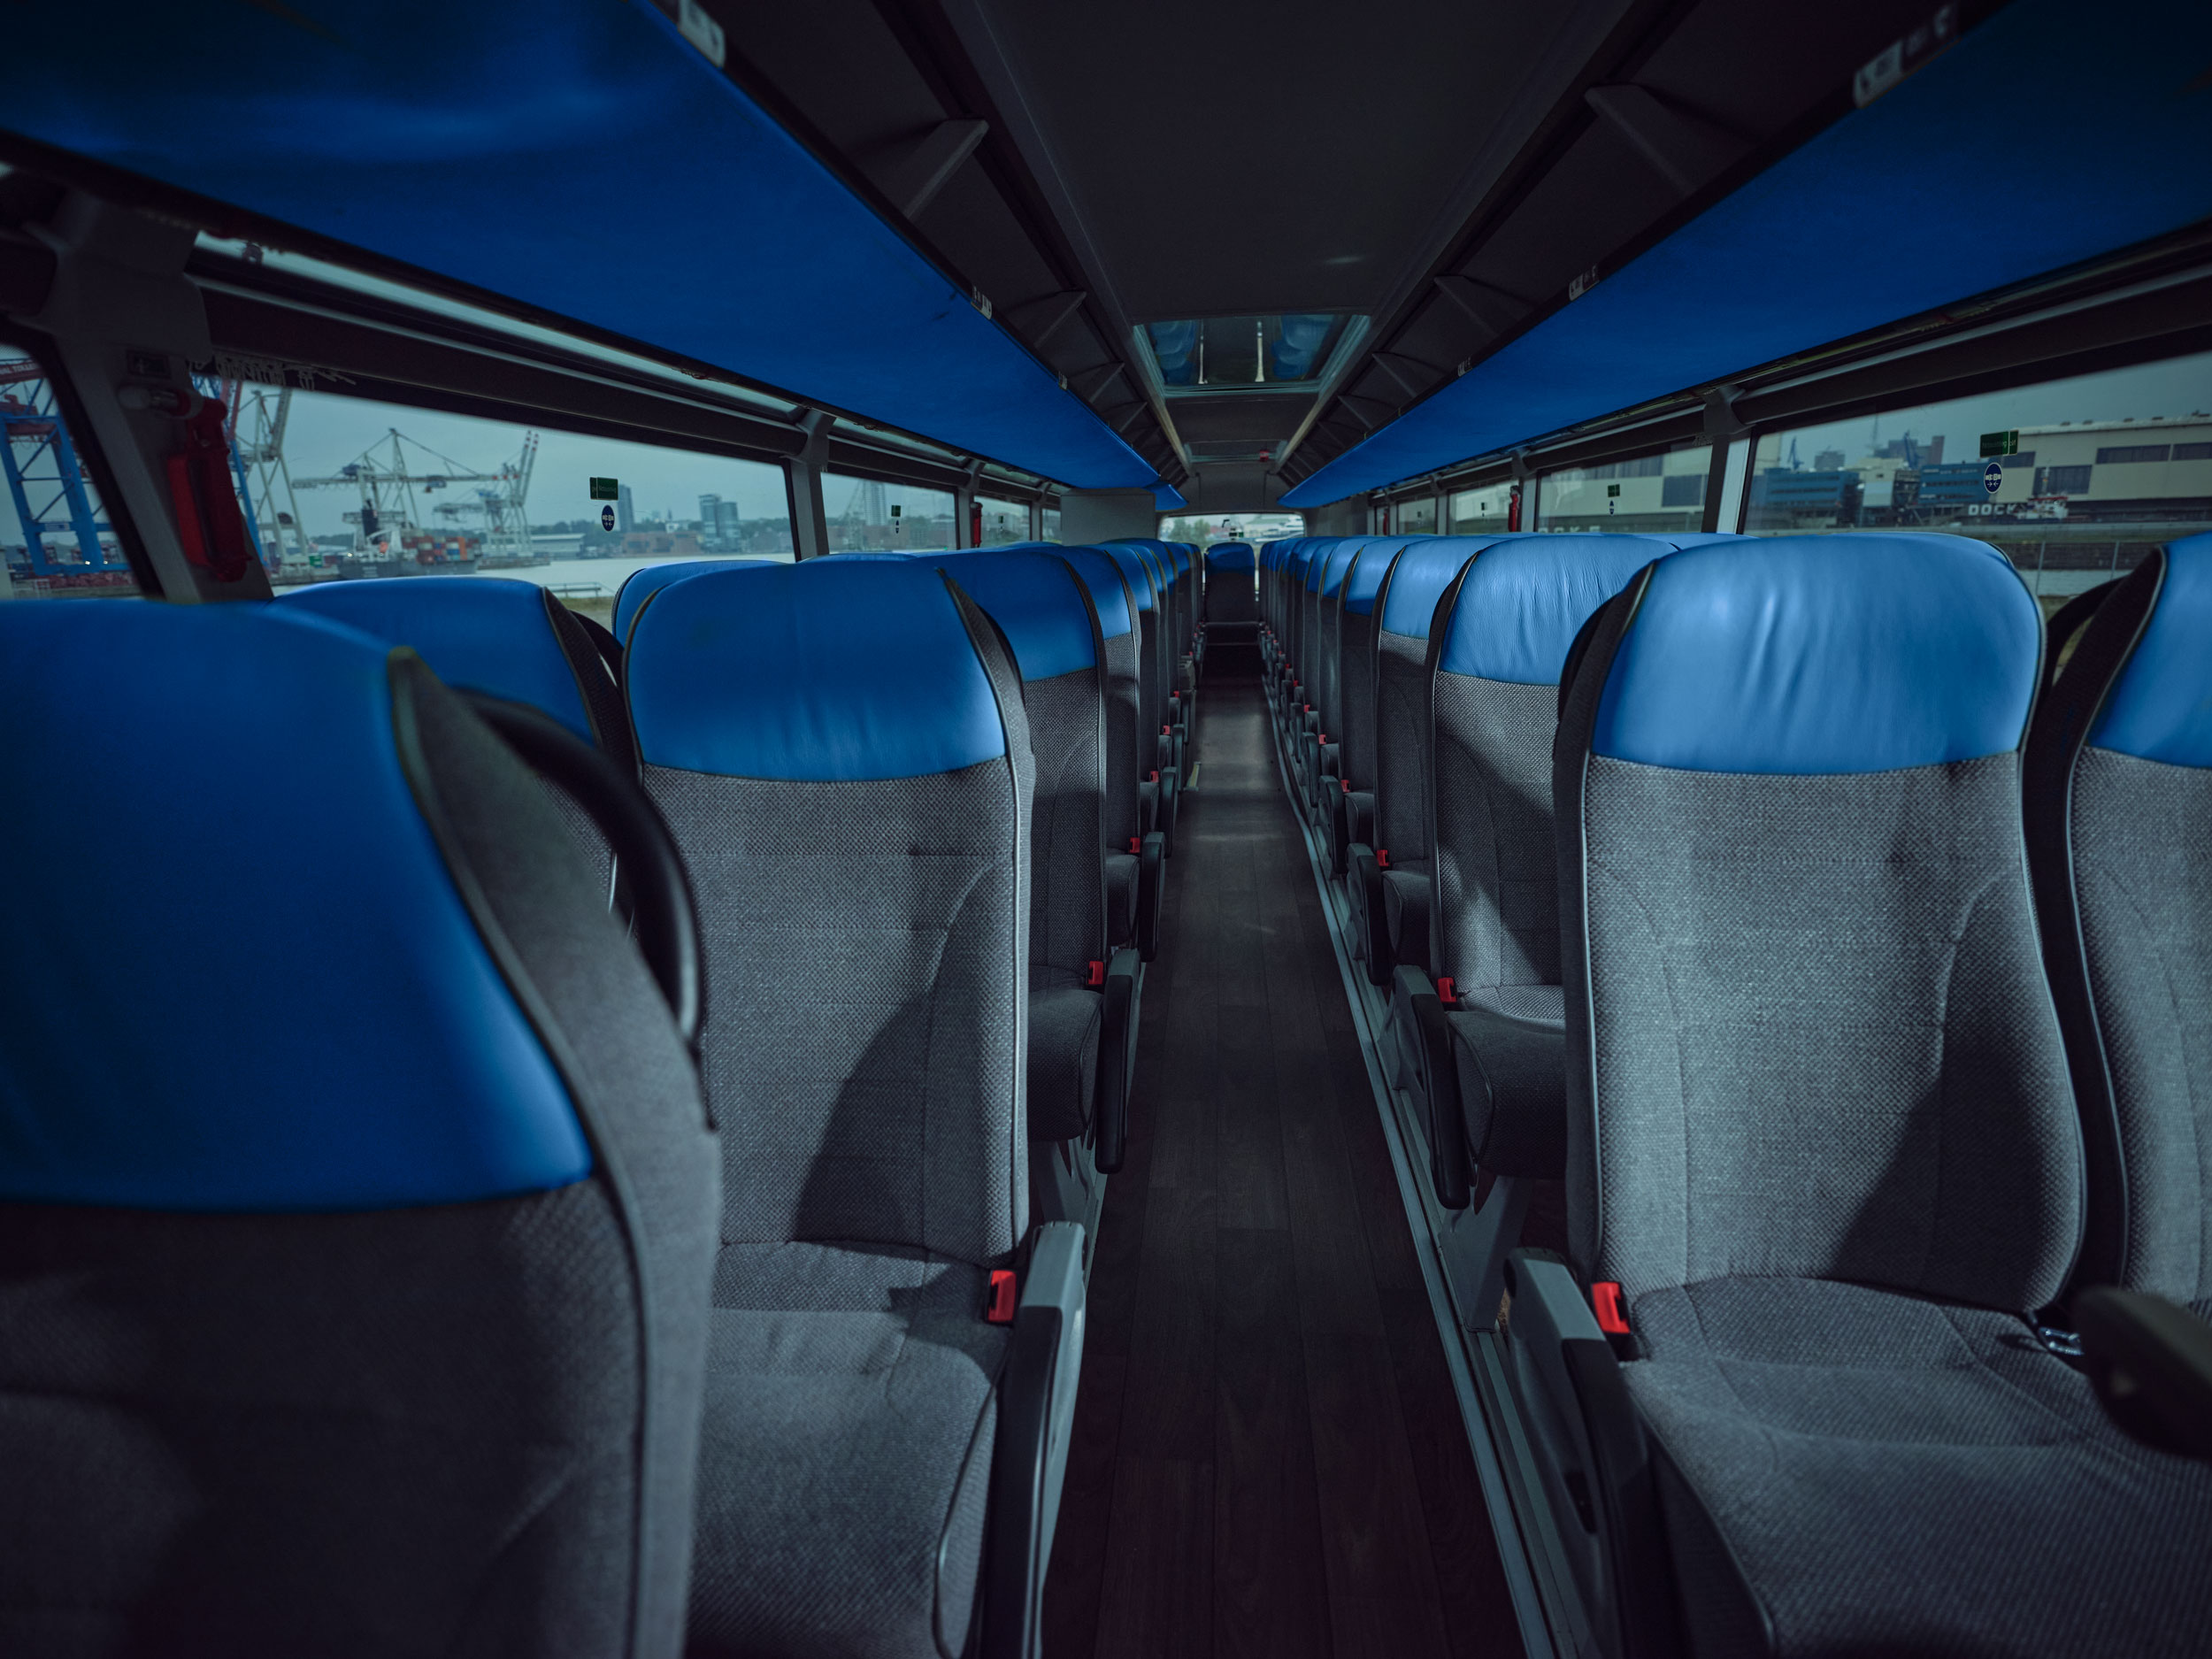 Interior of a coach